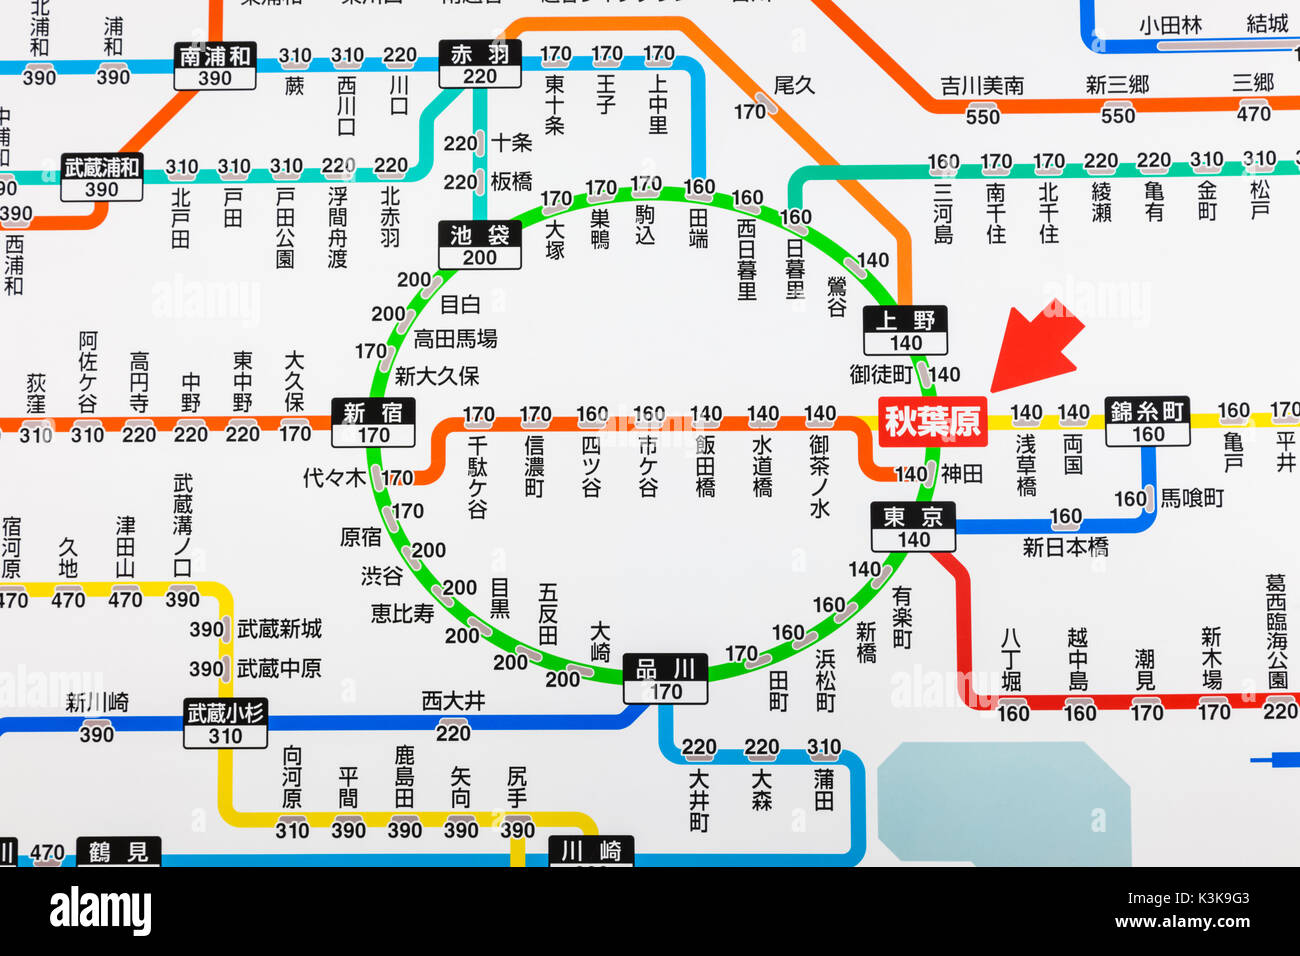 Giappone, Hoshu, Tokyo, Akihabara Station, Stazione ferroviaria la mappa di rete mostra i prezzi dei biglietti per varie destinazioni in giapponese Foto Stock